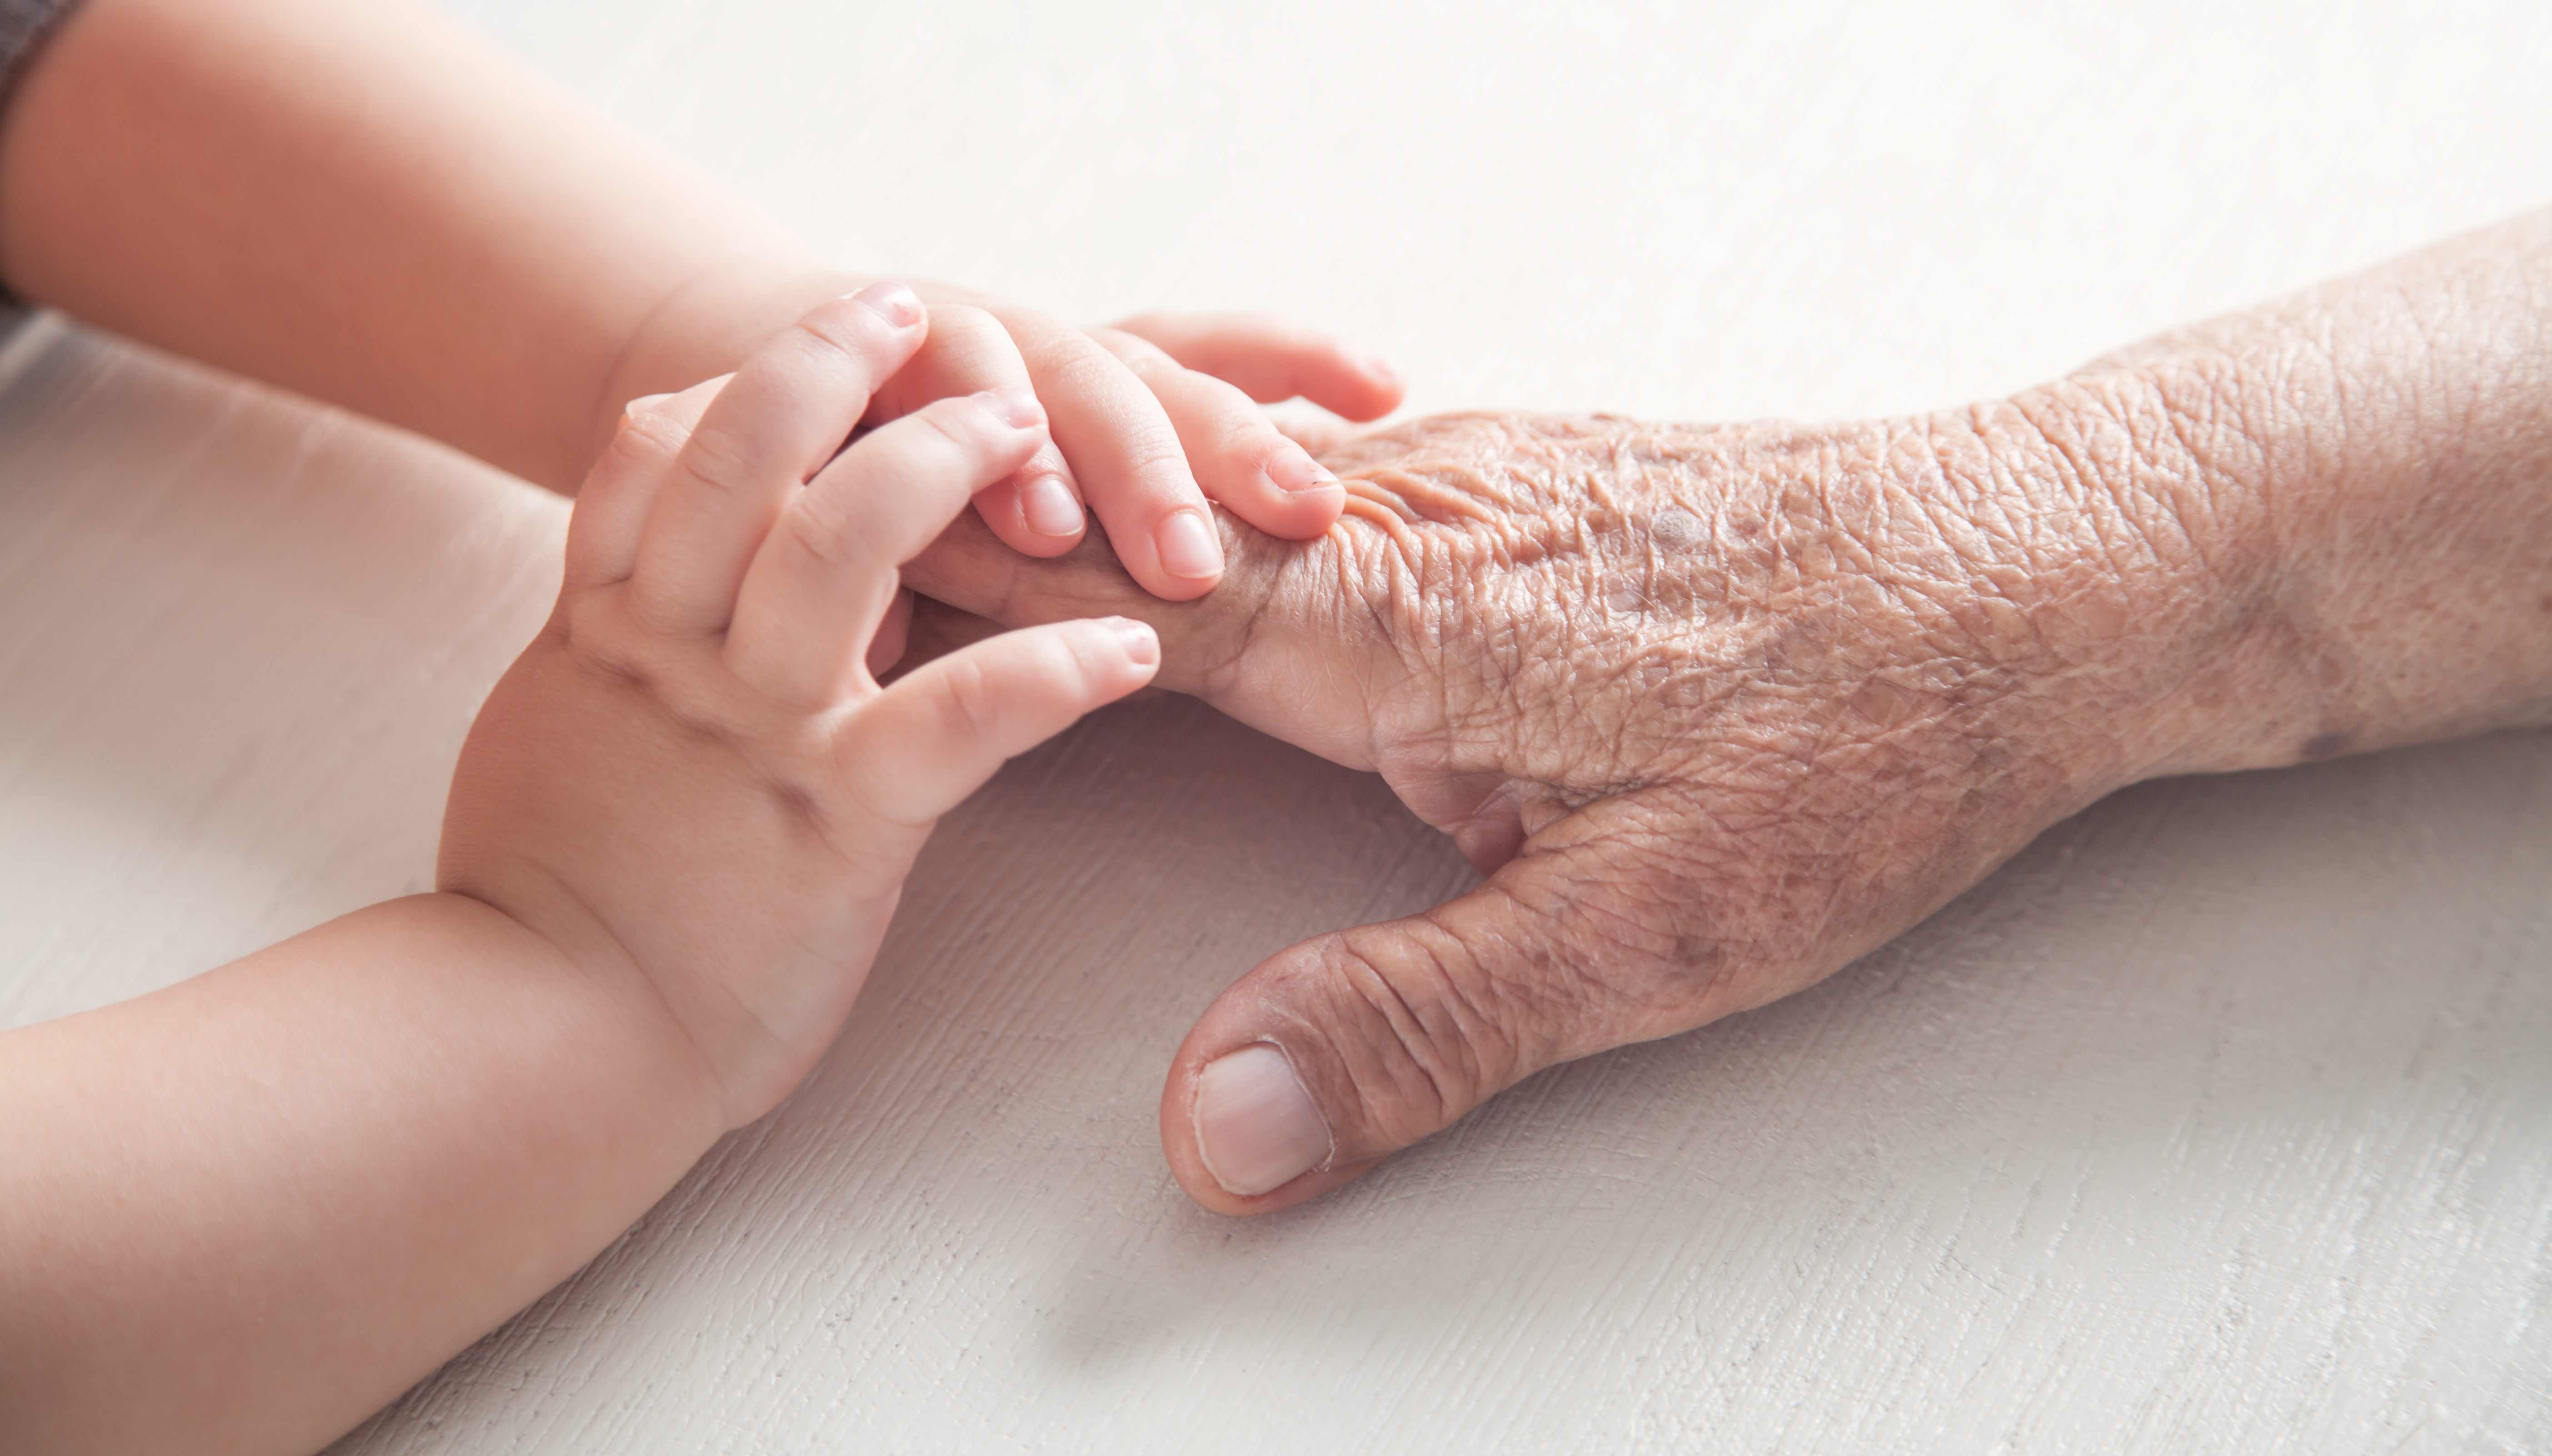 Les mains d'un enfant tenant la main d'une personne âgée. | Source : Shutterstock/ANDRANIK HAKOBYAN